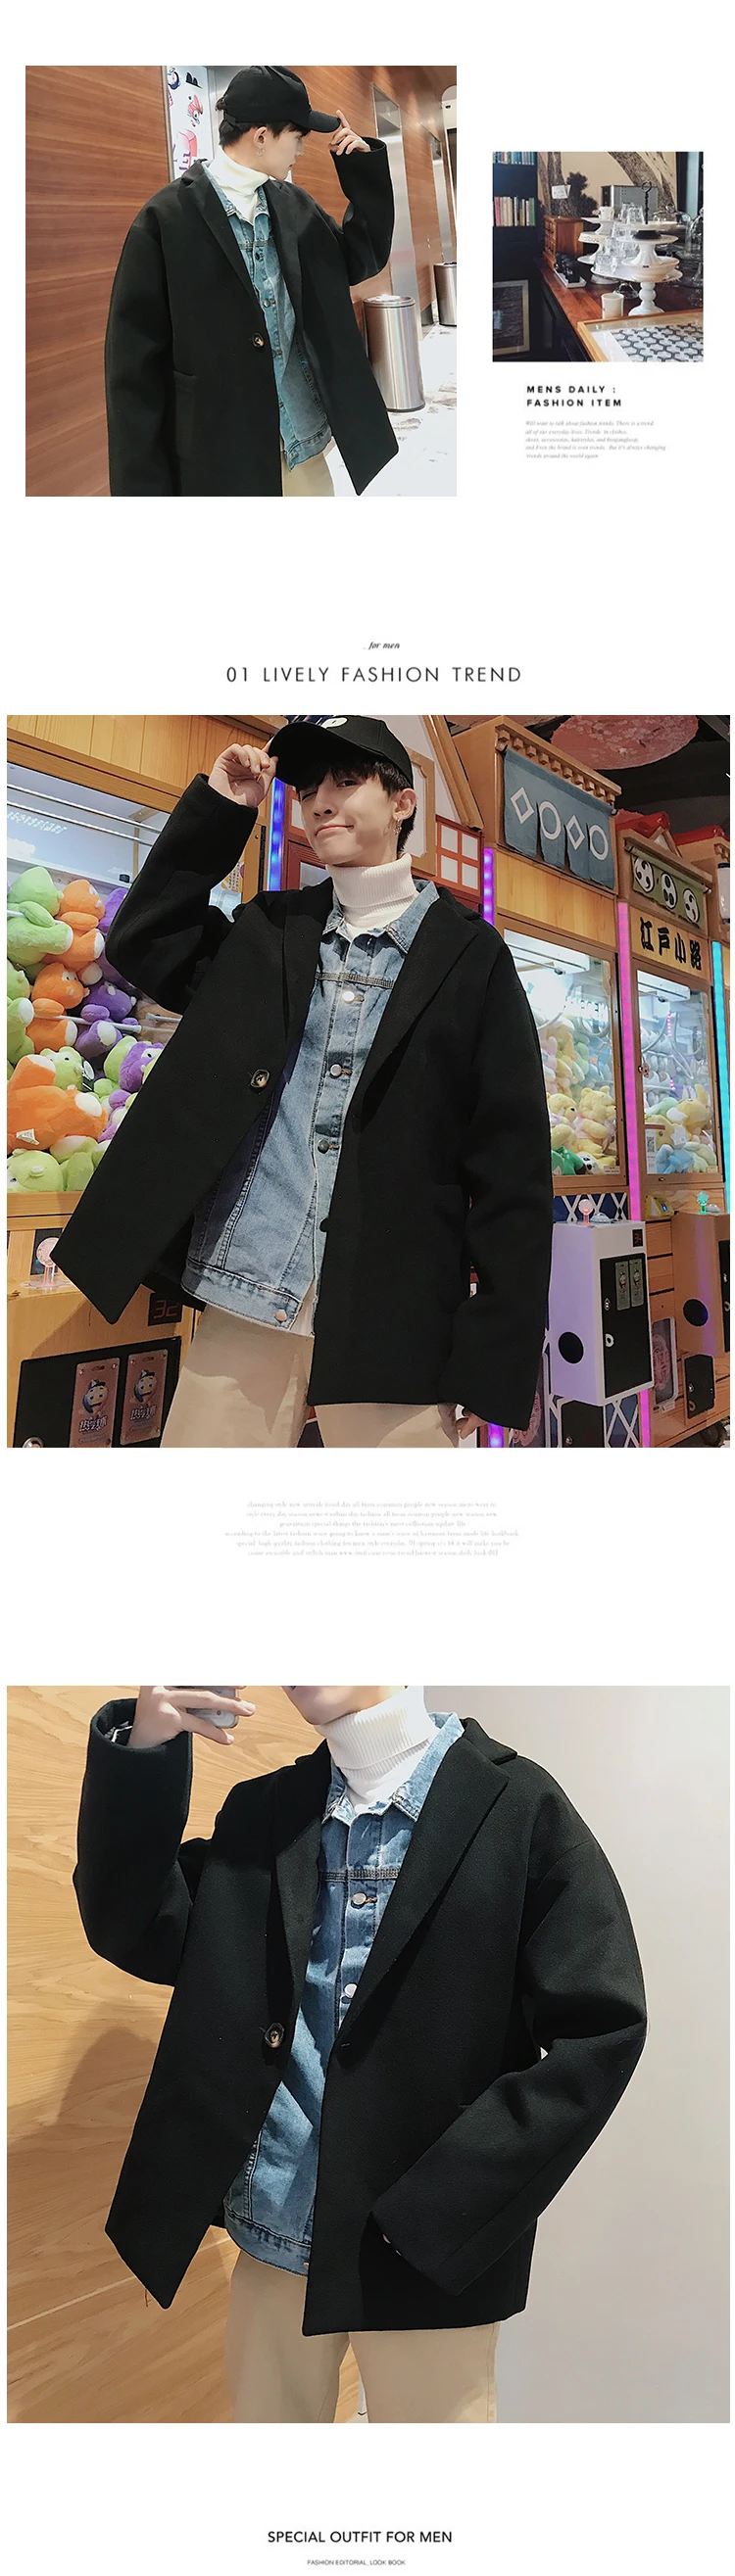 Мужской короткий стиль шерстяное пальто Мужская шерстяная куртка Свободная хлопковая стеганая одежда черные/коричневые кашемировые пальто S-2XL